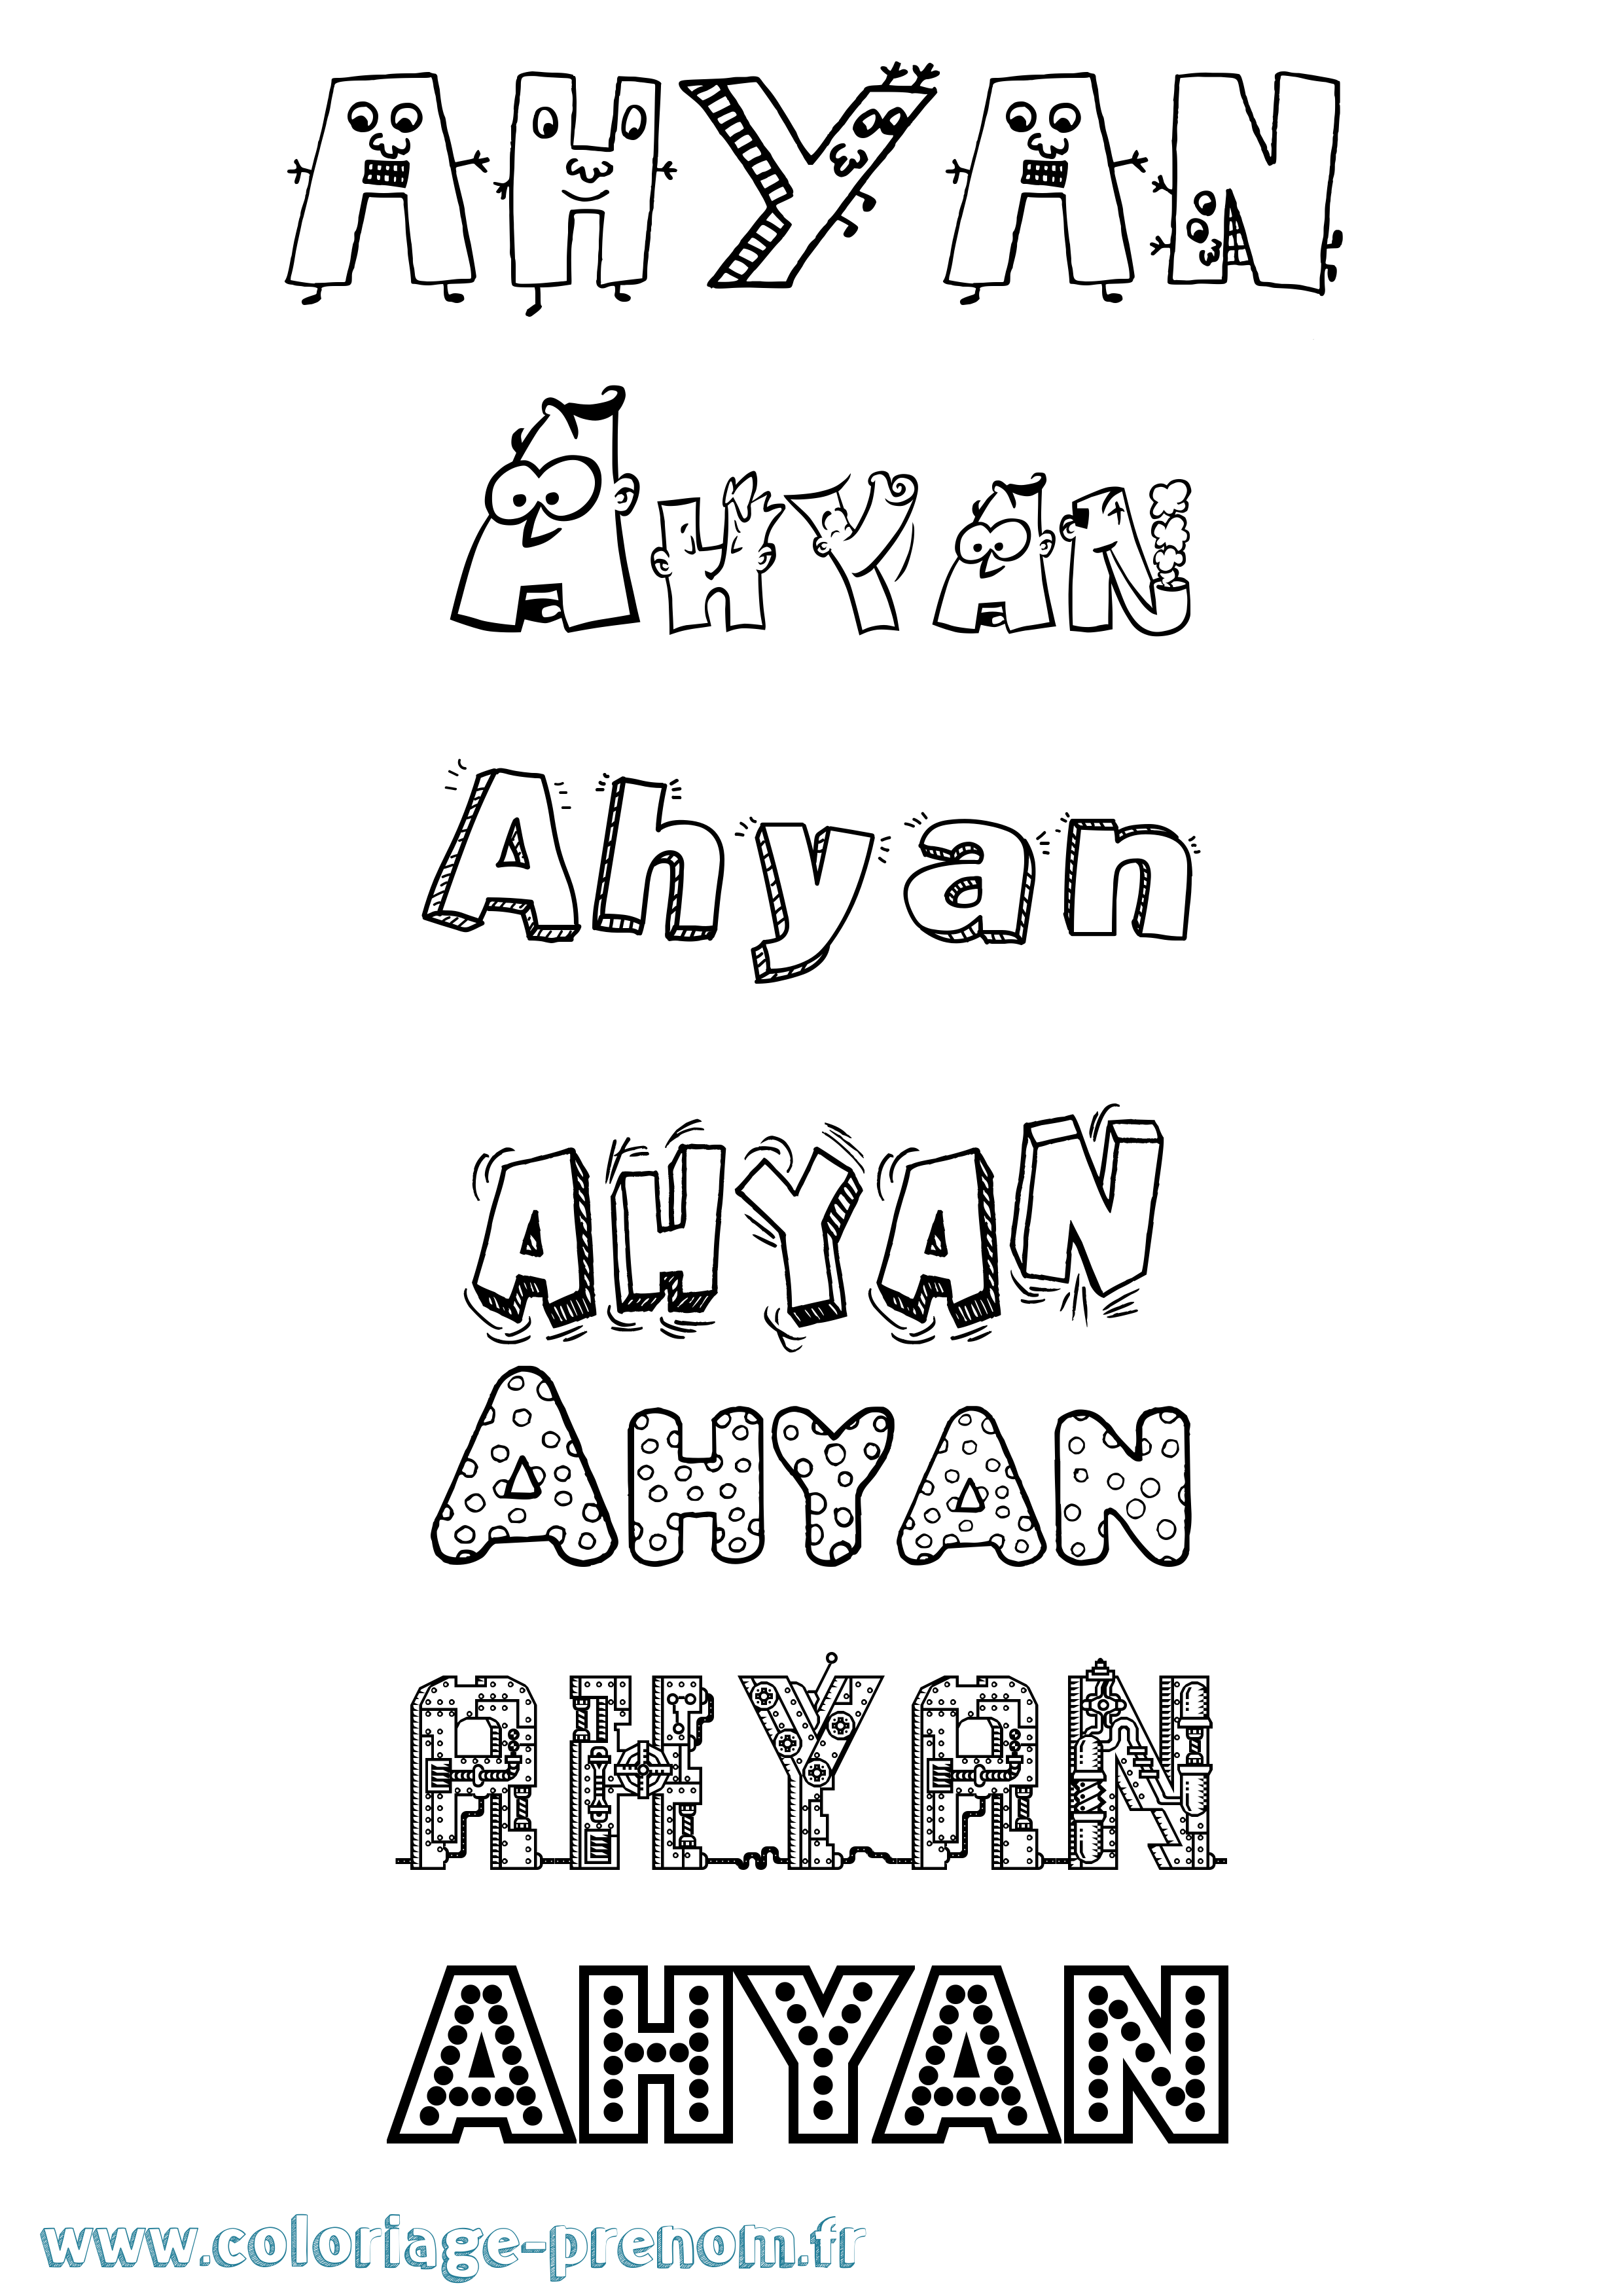 Coloriage prénom Ahyan Fun